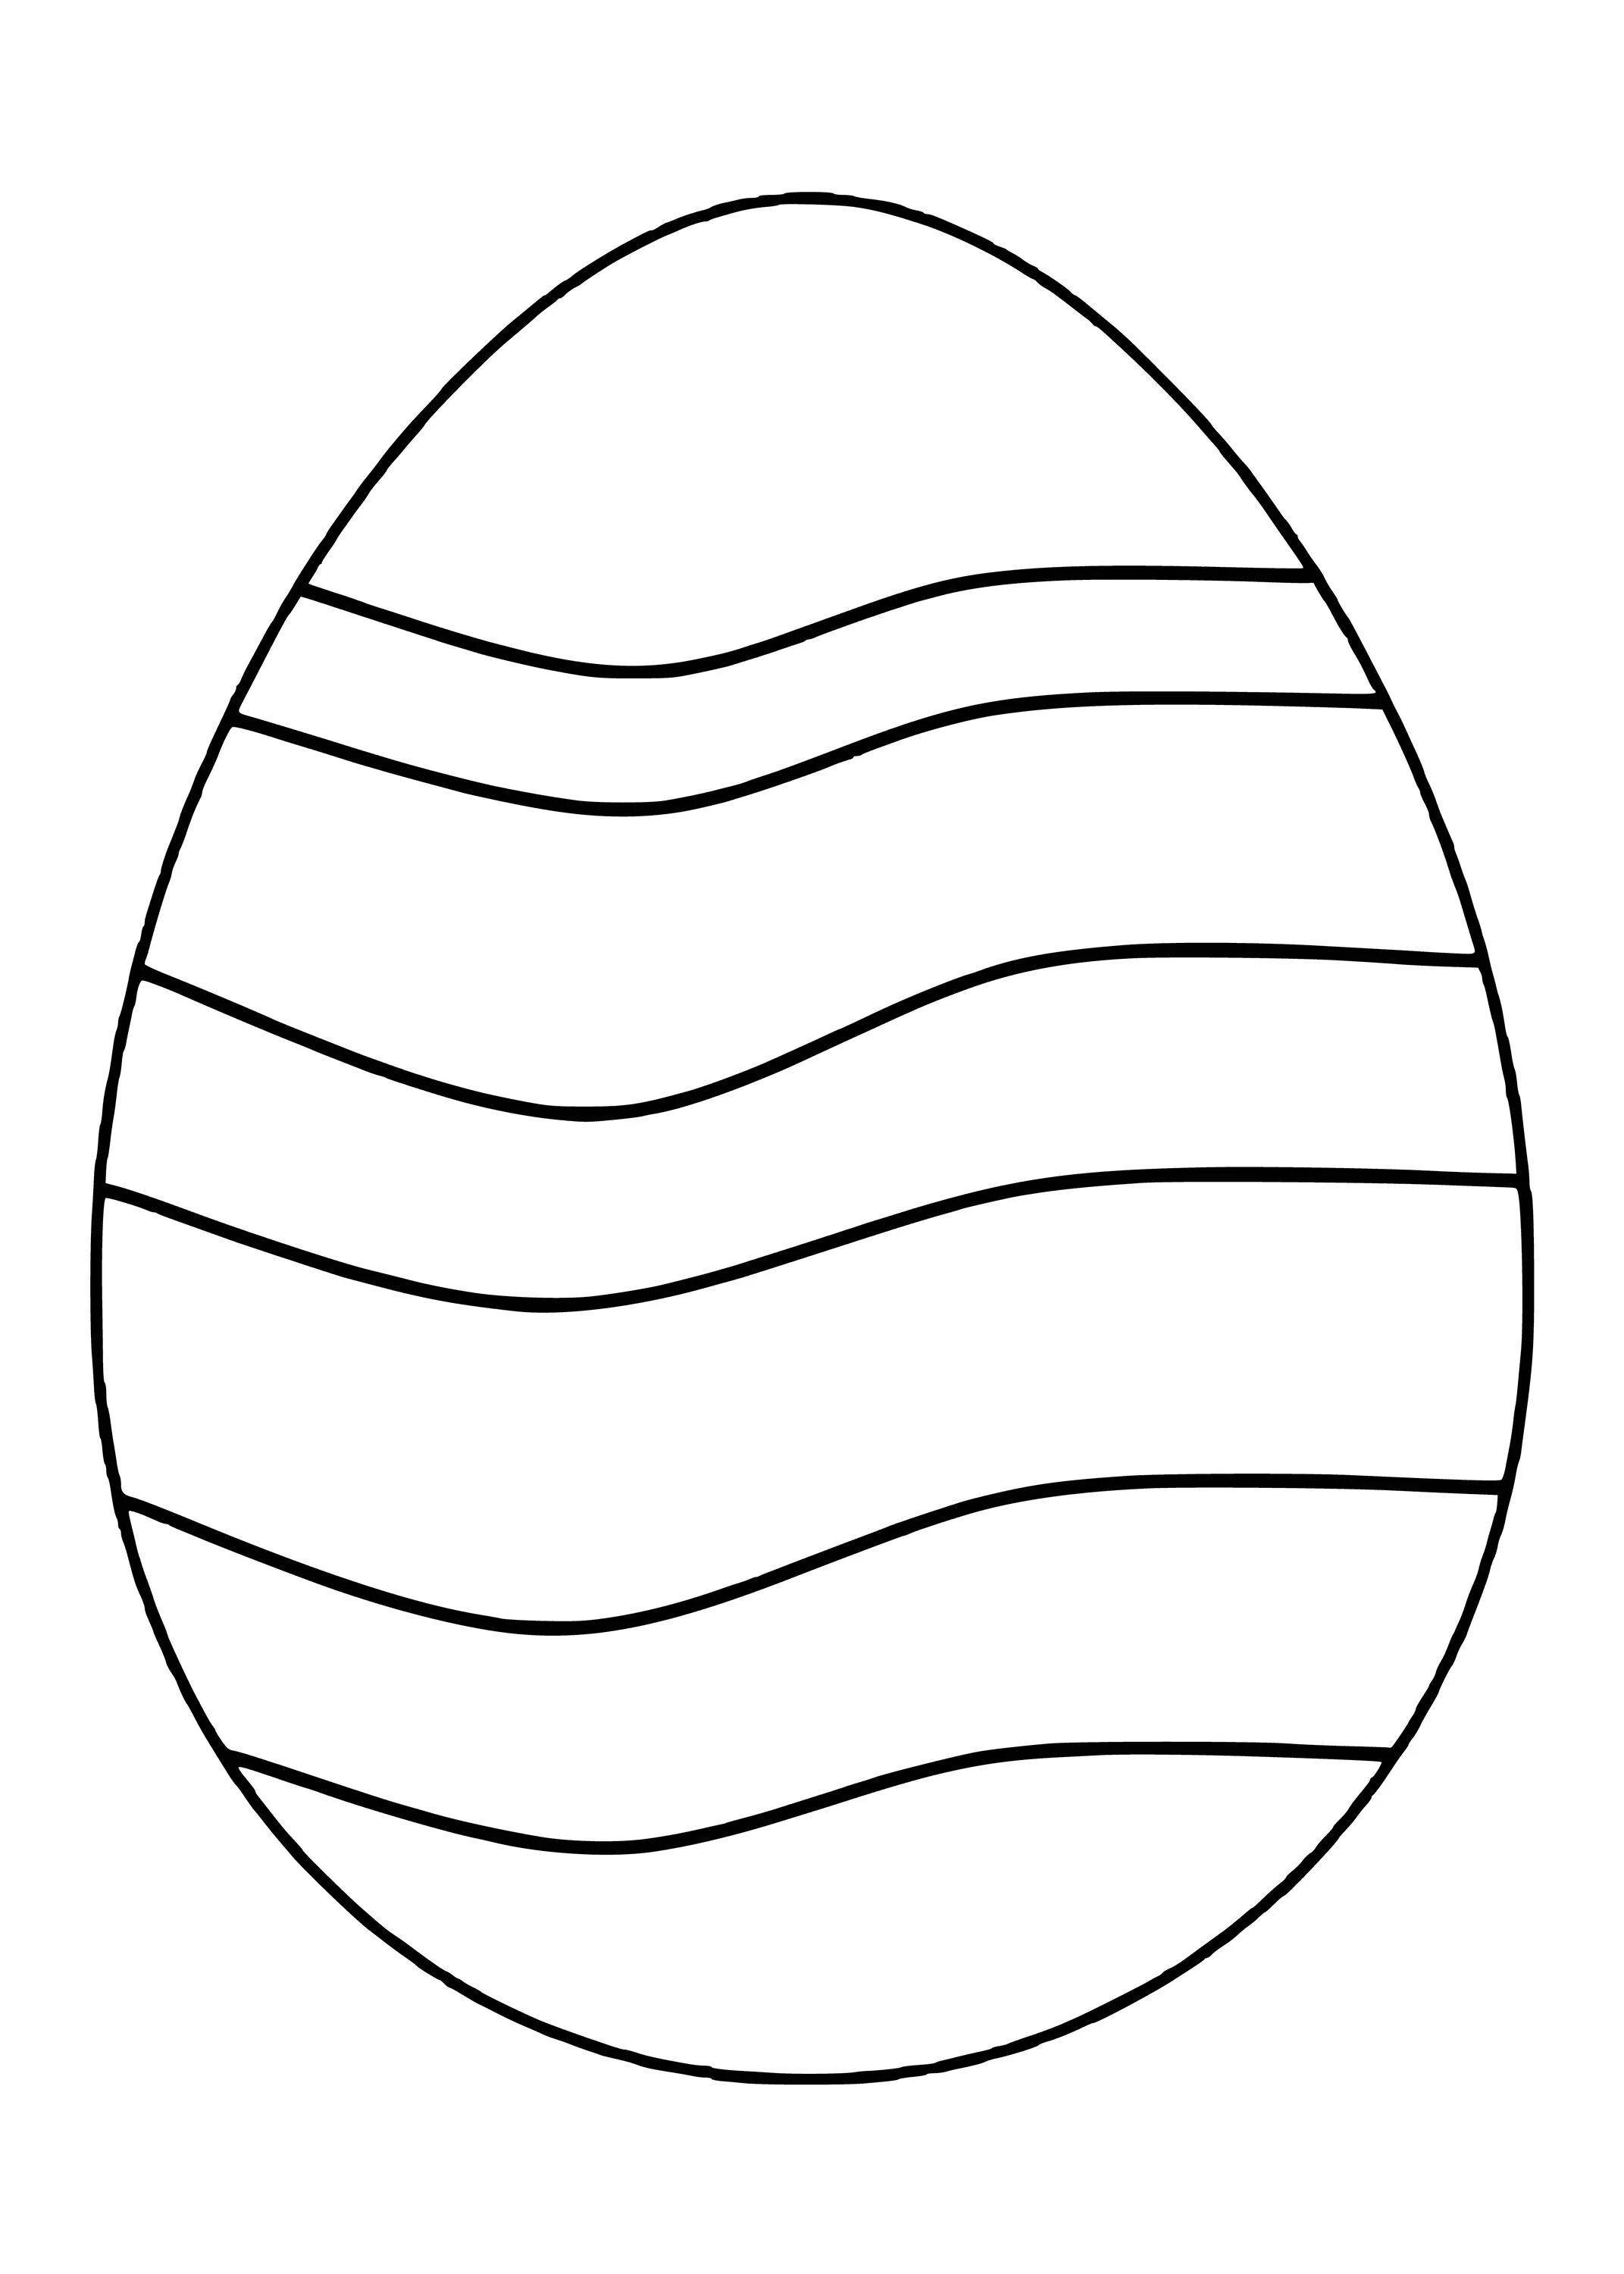 Пасхальное яйцо раскраска. Пасхальное яйцо раскраска для детей. Раскраски пасочных яиц. Яйцо раскраска для детей. Шаблон пасхального яйца для вырезания